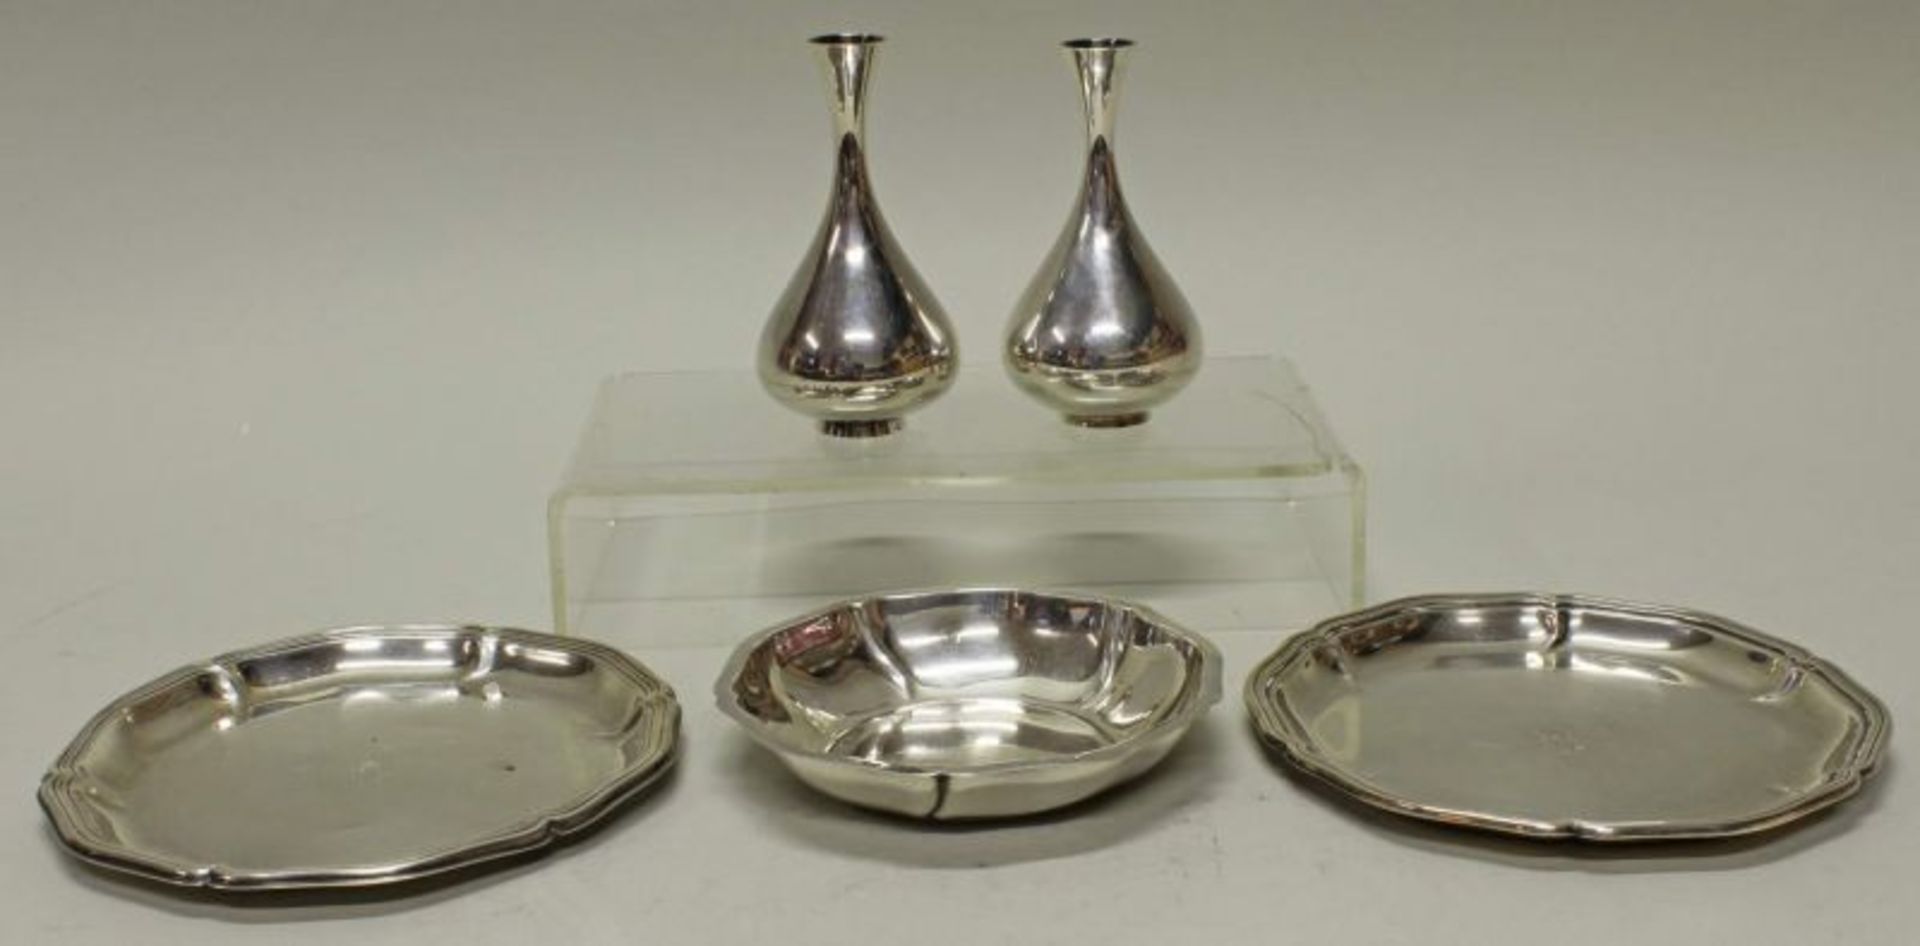 Paar Tischvasen, Silber 925, Koch & Bergfeld, konisch, 11.5 cm hoch, zus. ca. 177 g, 1x gedellt;